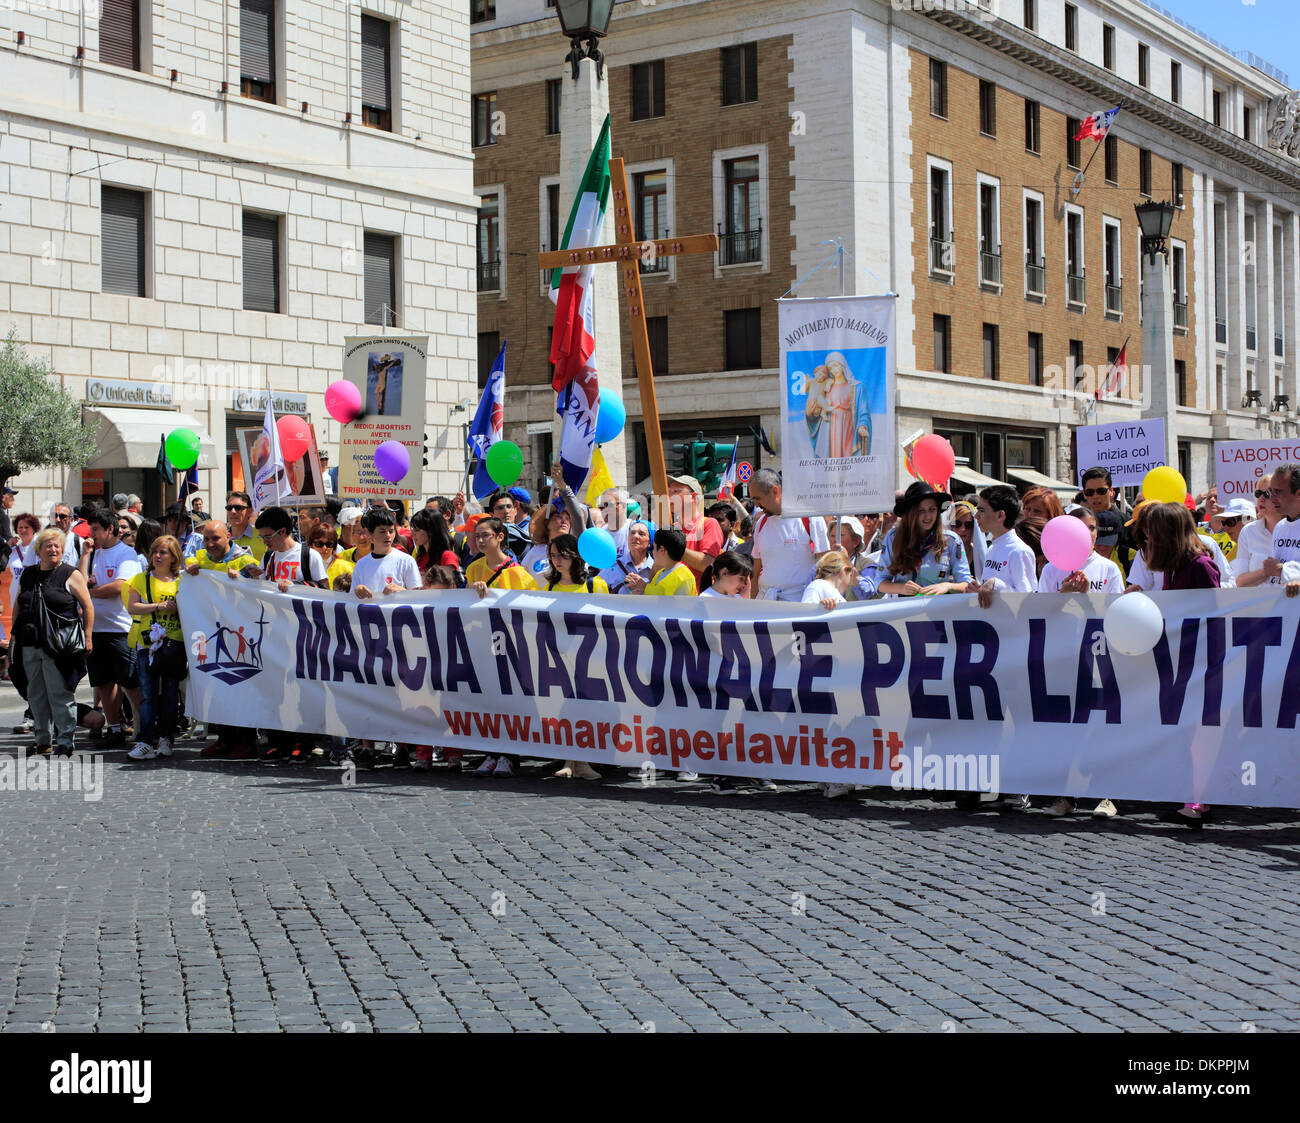 Catholic manifestation against abortion, Rome, Italy Stock Photo